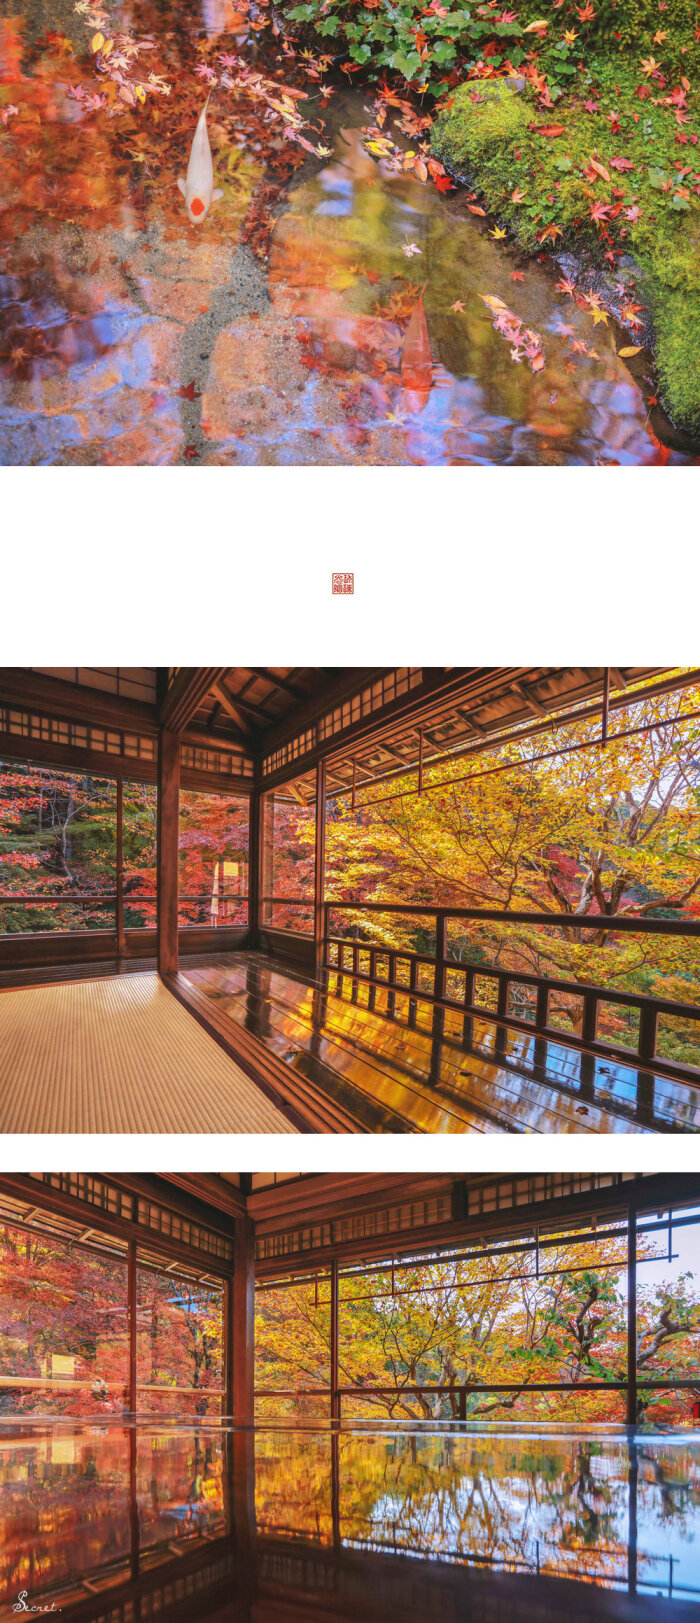 京都红叶季旅拍琉璃光院 枫的色彩by 刘顺儿妞 堆糖 美图壁纸兴趣社区